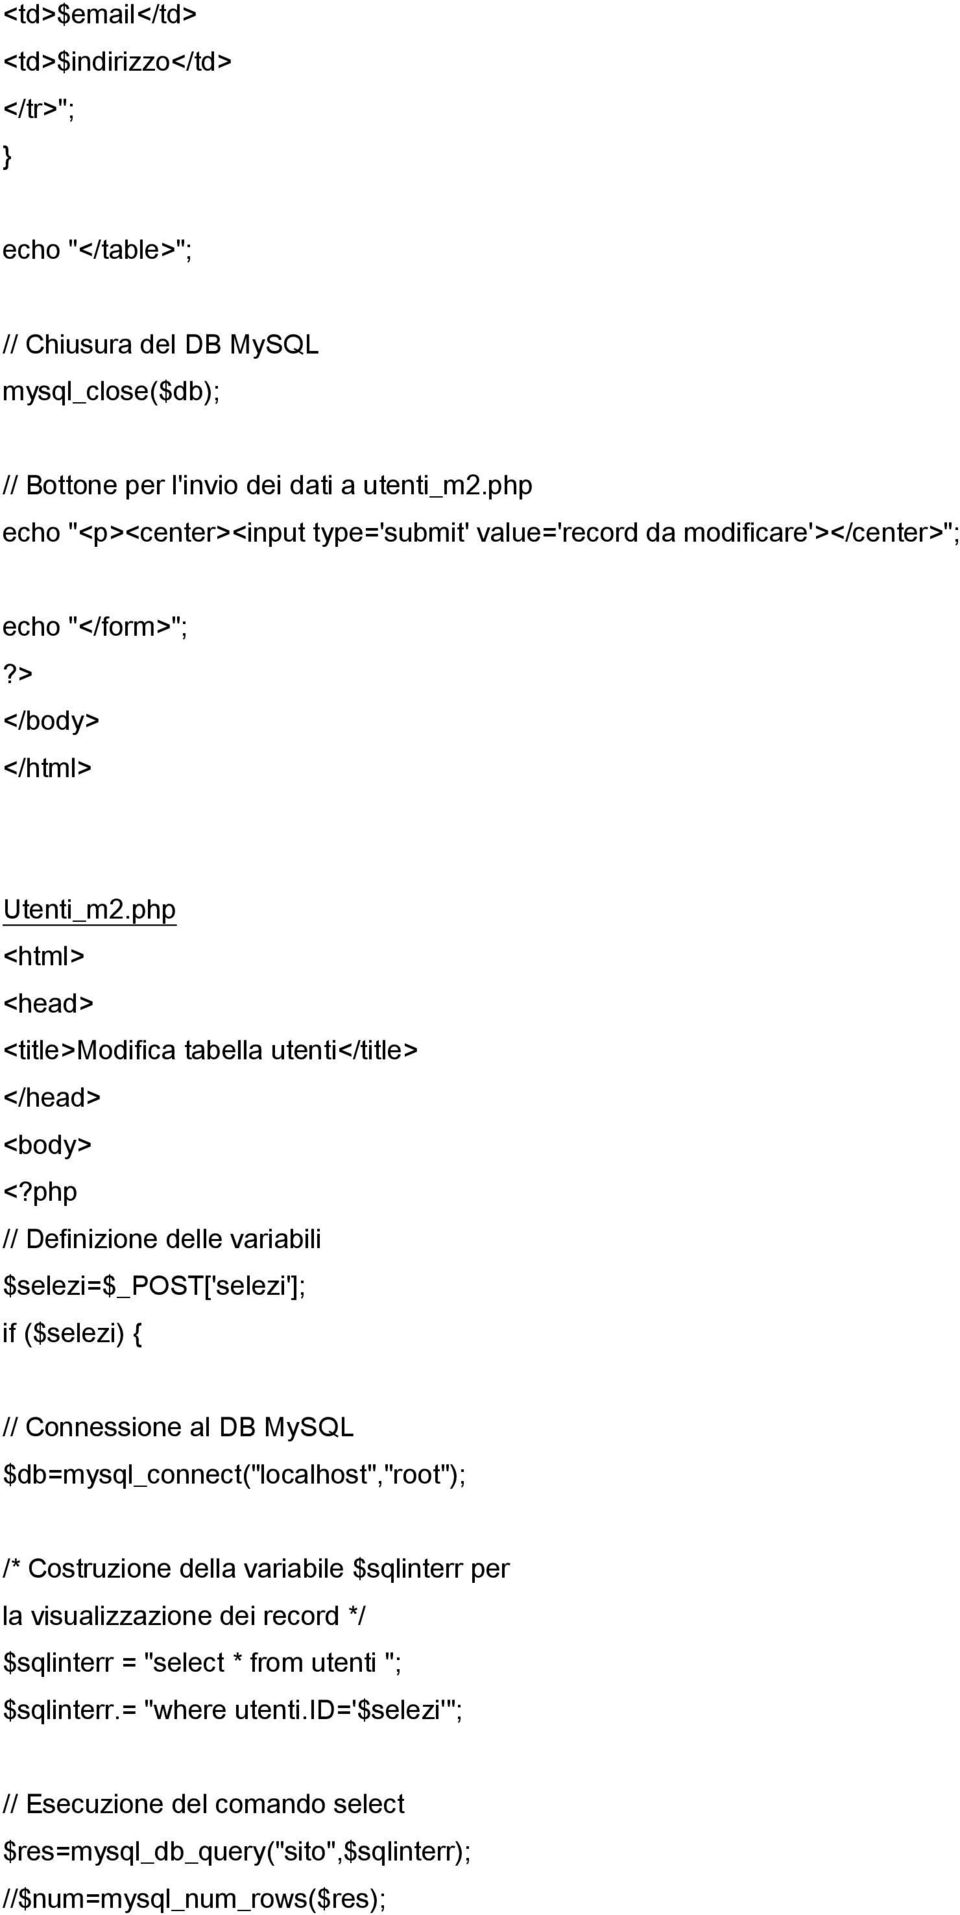 php <html> <head> <title>modifica tabella utenti</title> </head> <body> // Definizione delle variabili $selezi=$_post['selezi']; if ($selezi) { // Connessione al DB MySQL